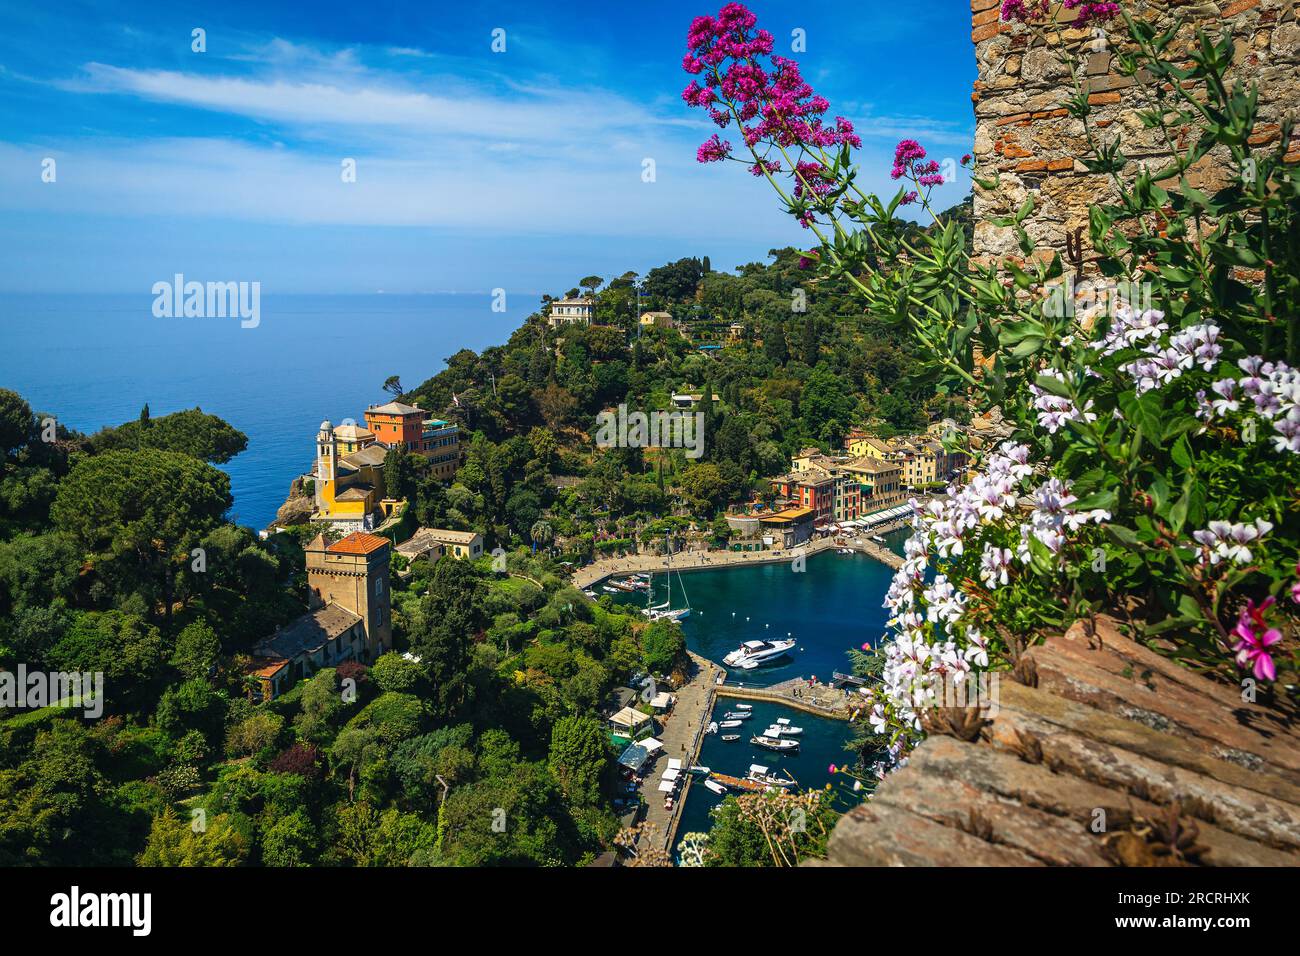 Toller Urlaub und tolle Reiselage in Ligurien. Blick auf das Portofino Resort mit bunten Gebäuden und Luxusbooten, Yachten von der blühenden Terrasse von Brow Stockfoto